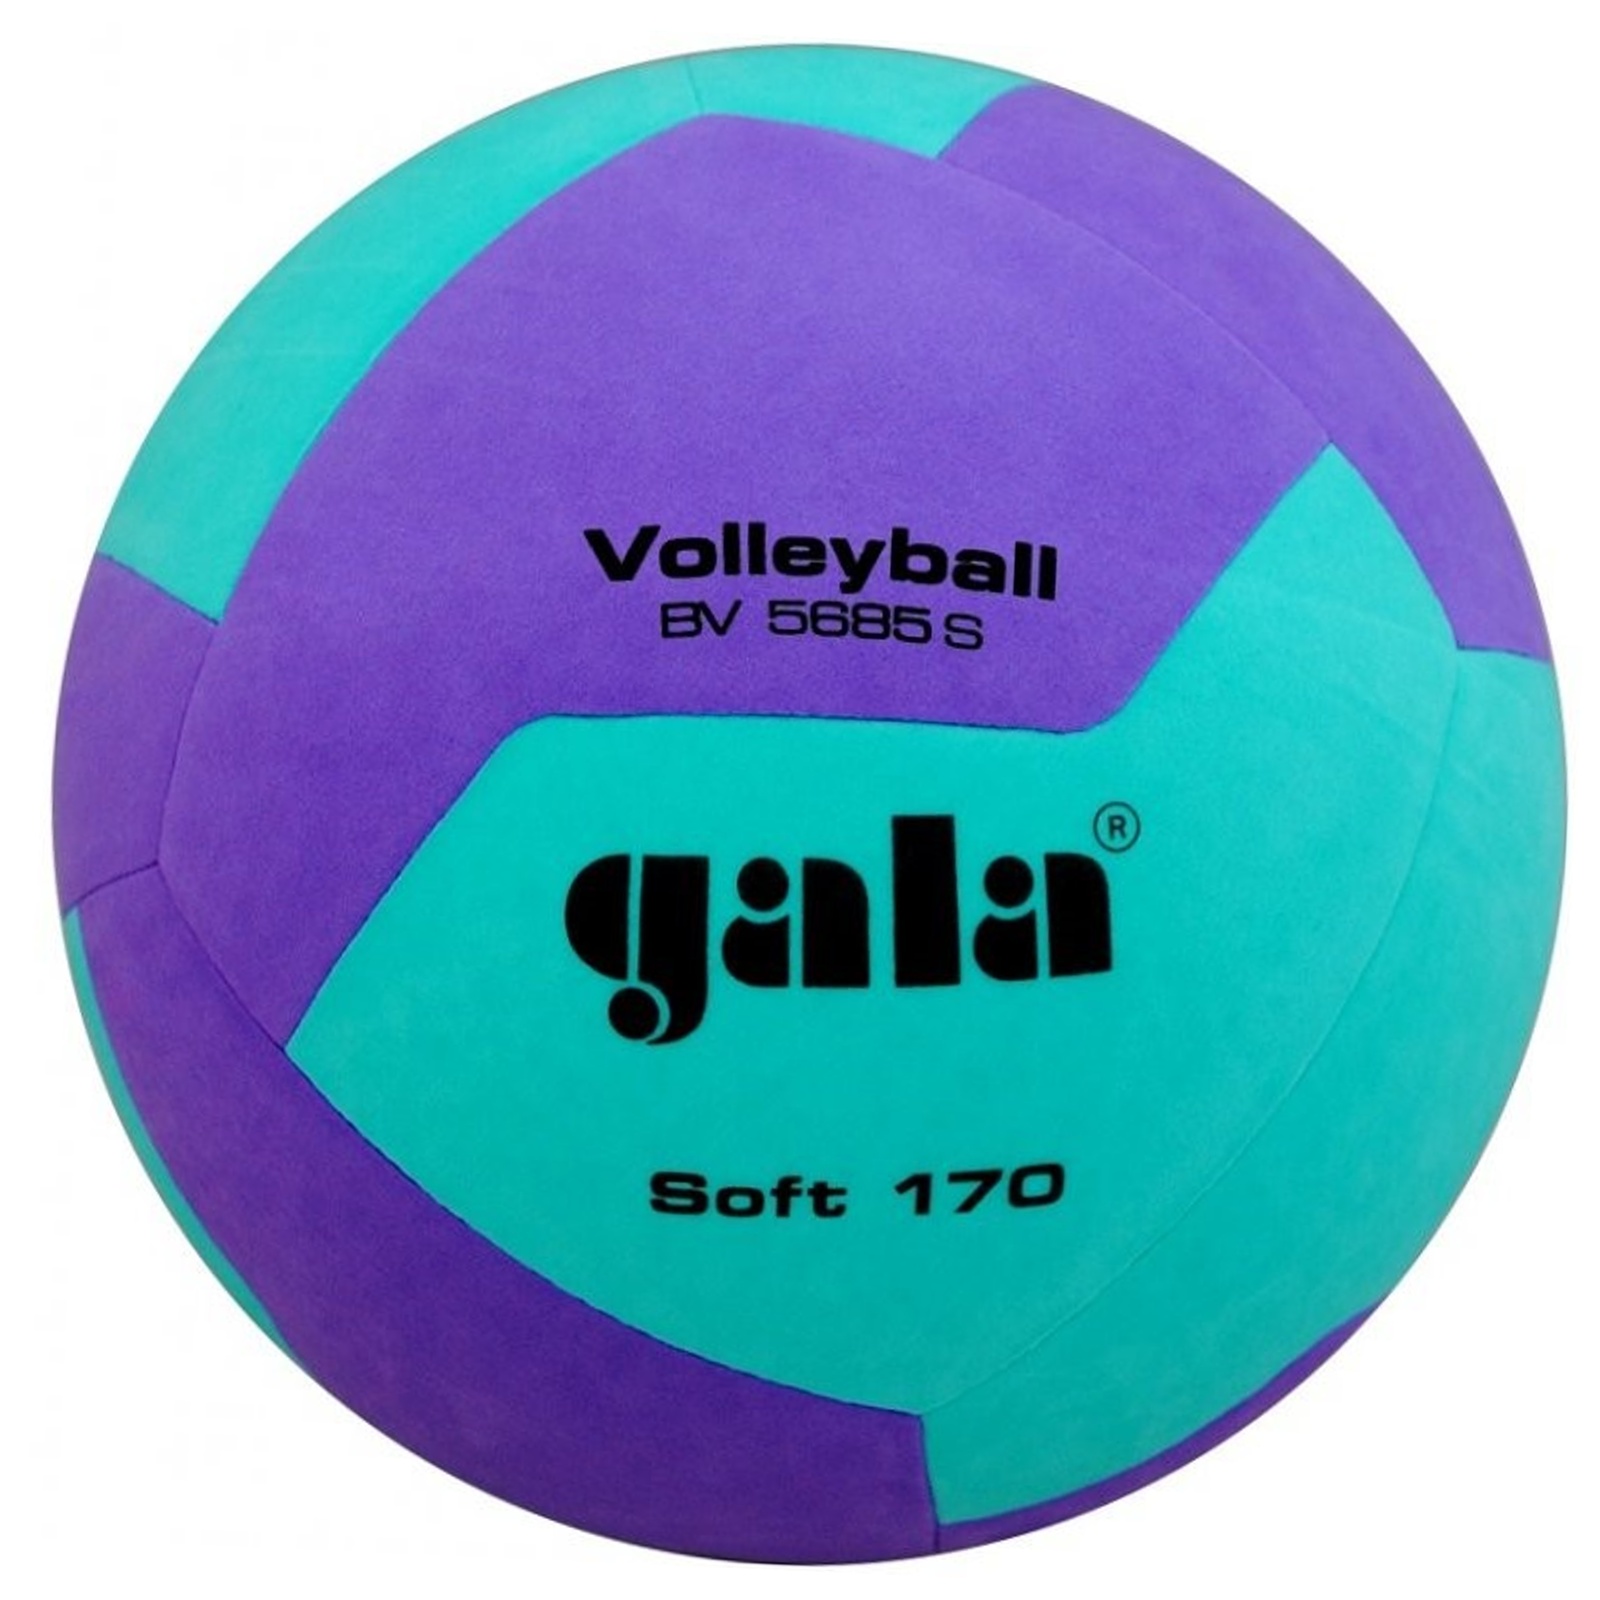 Volejbalový míč GALA Soft 170 BV5685S zeleno-fialový